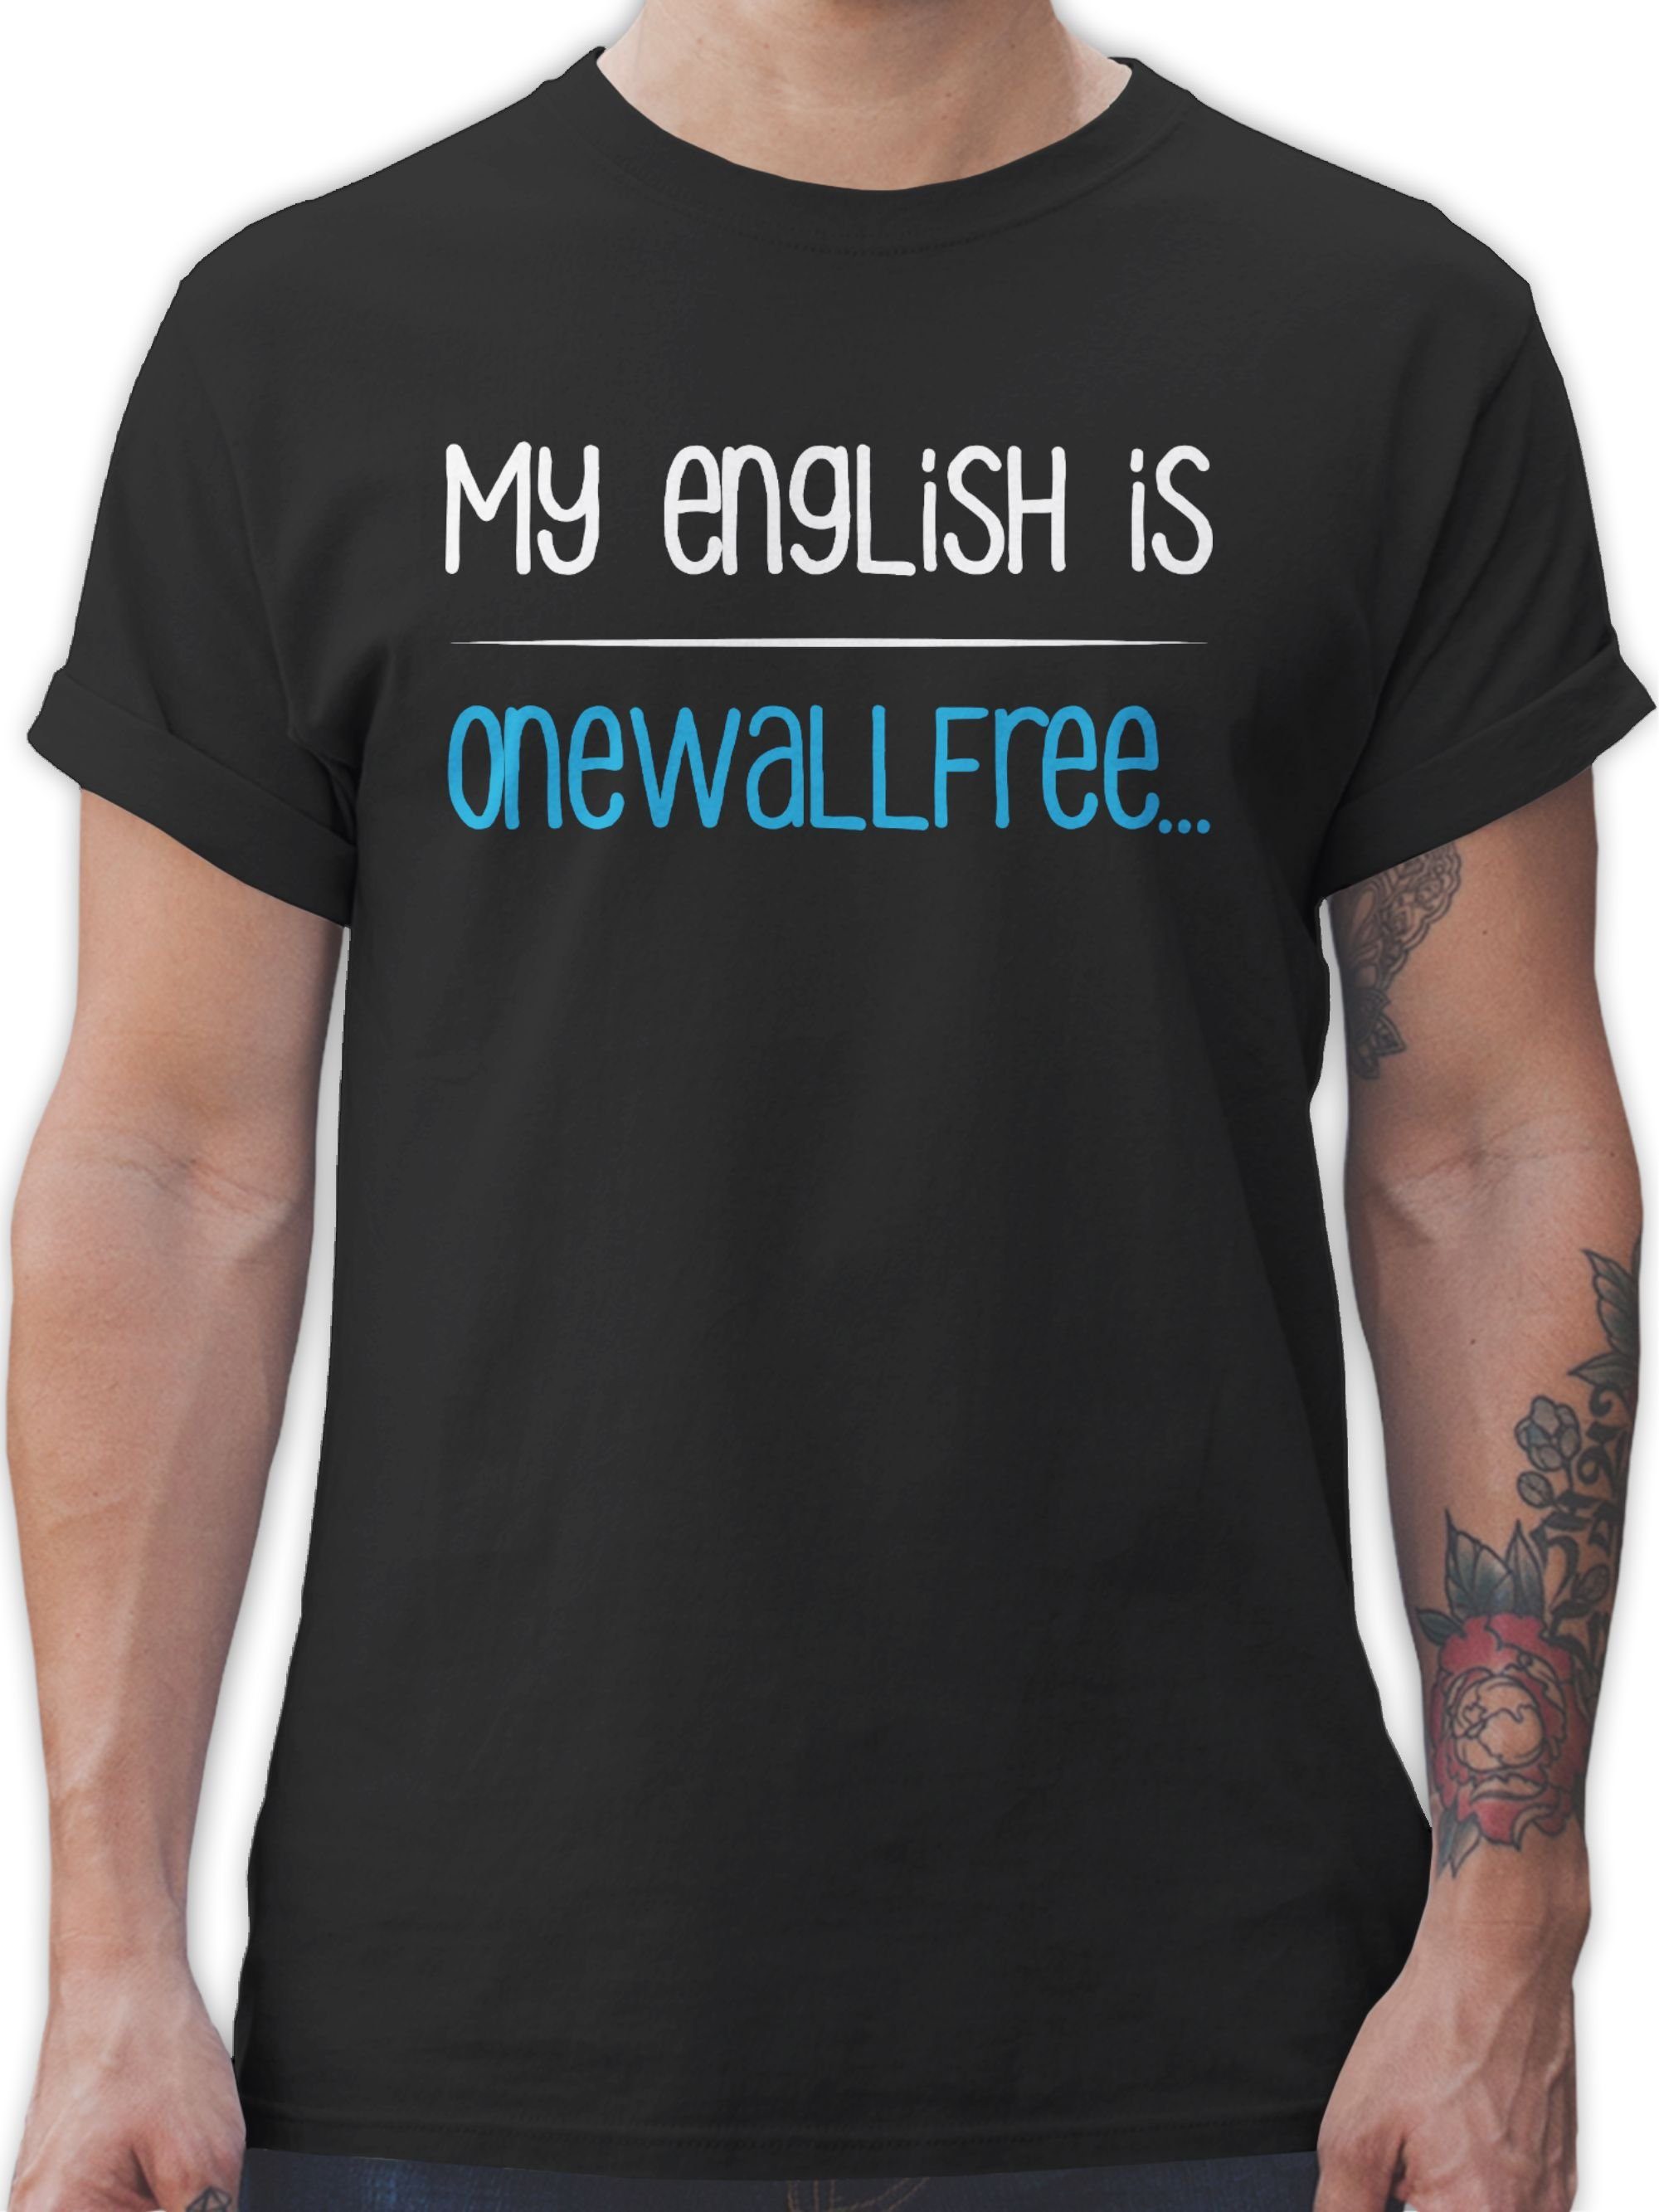 Shirtracer T-Shirt My english is onewallfree - Denglisch Sprüche Statement mit Spruch 02 Schwarz